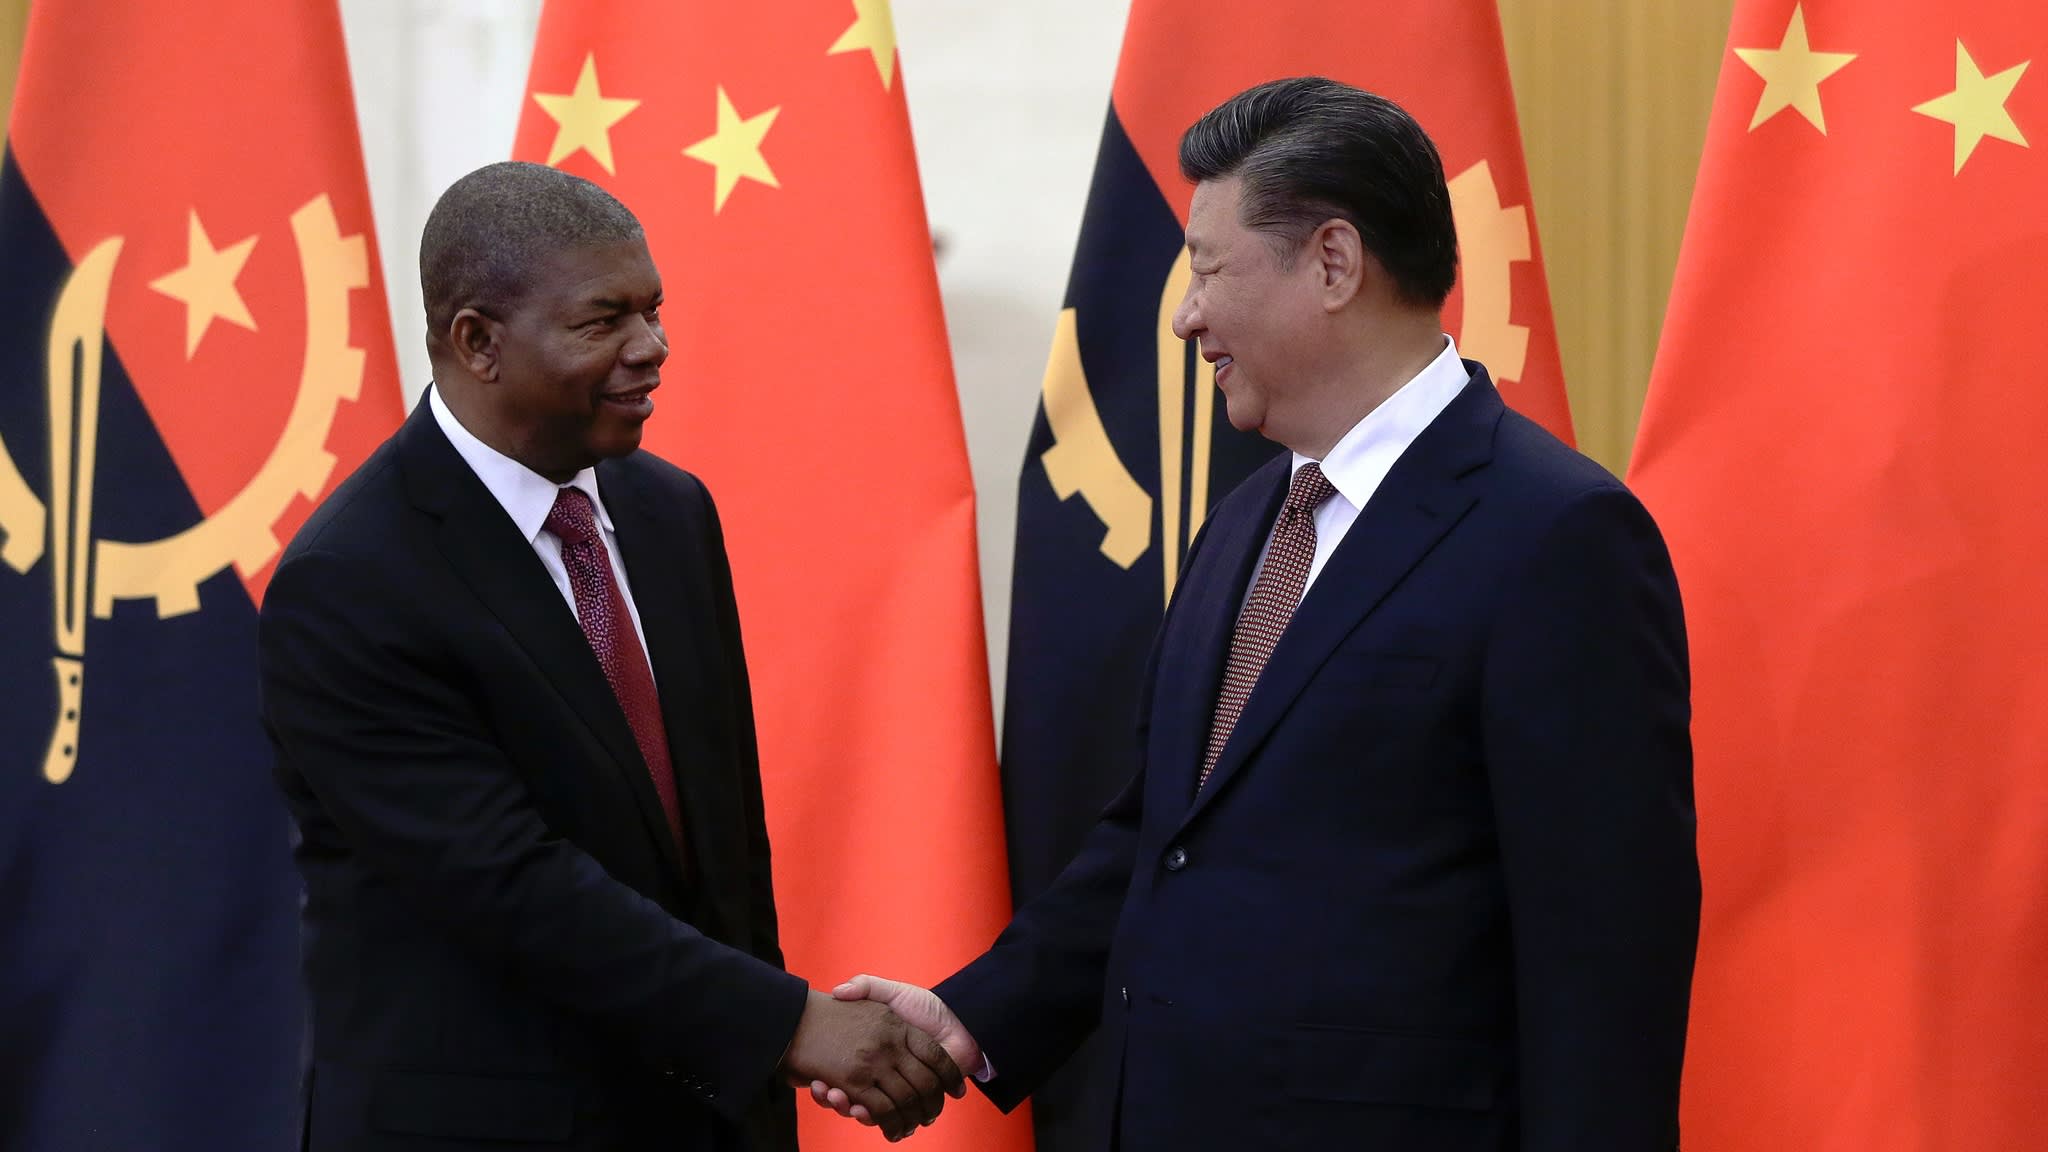 Nợ hàng tỷ USD của Angola: 
Mặc dù Angola đang đối mặt với một khoản nợ hàng tỷ USD, nhưng đất nước này vẫn đang phát triển với tốc độ nhanh chóng. Bức ảnh liên quan đến chủ đề này sẽ giúp bạn hiểu rõ hơn về tình hình kinh tế của Angola và cách chính phủ đang đối phó với tình trạng này.